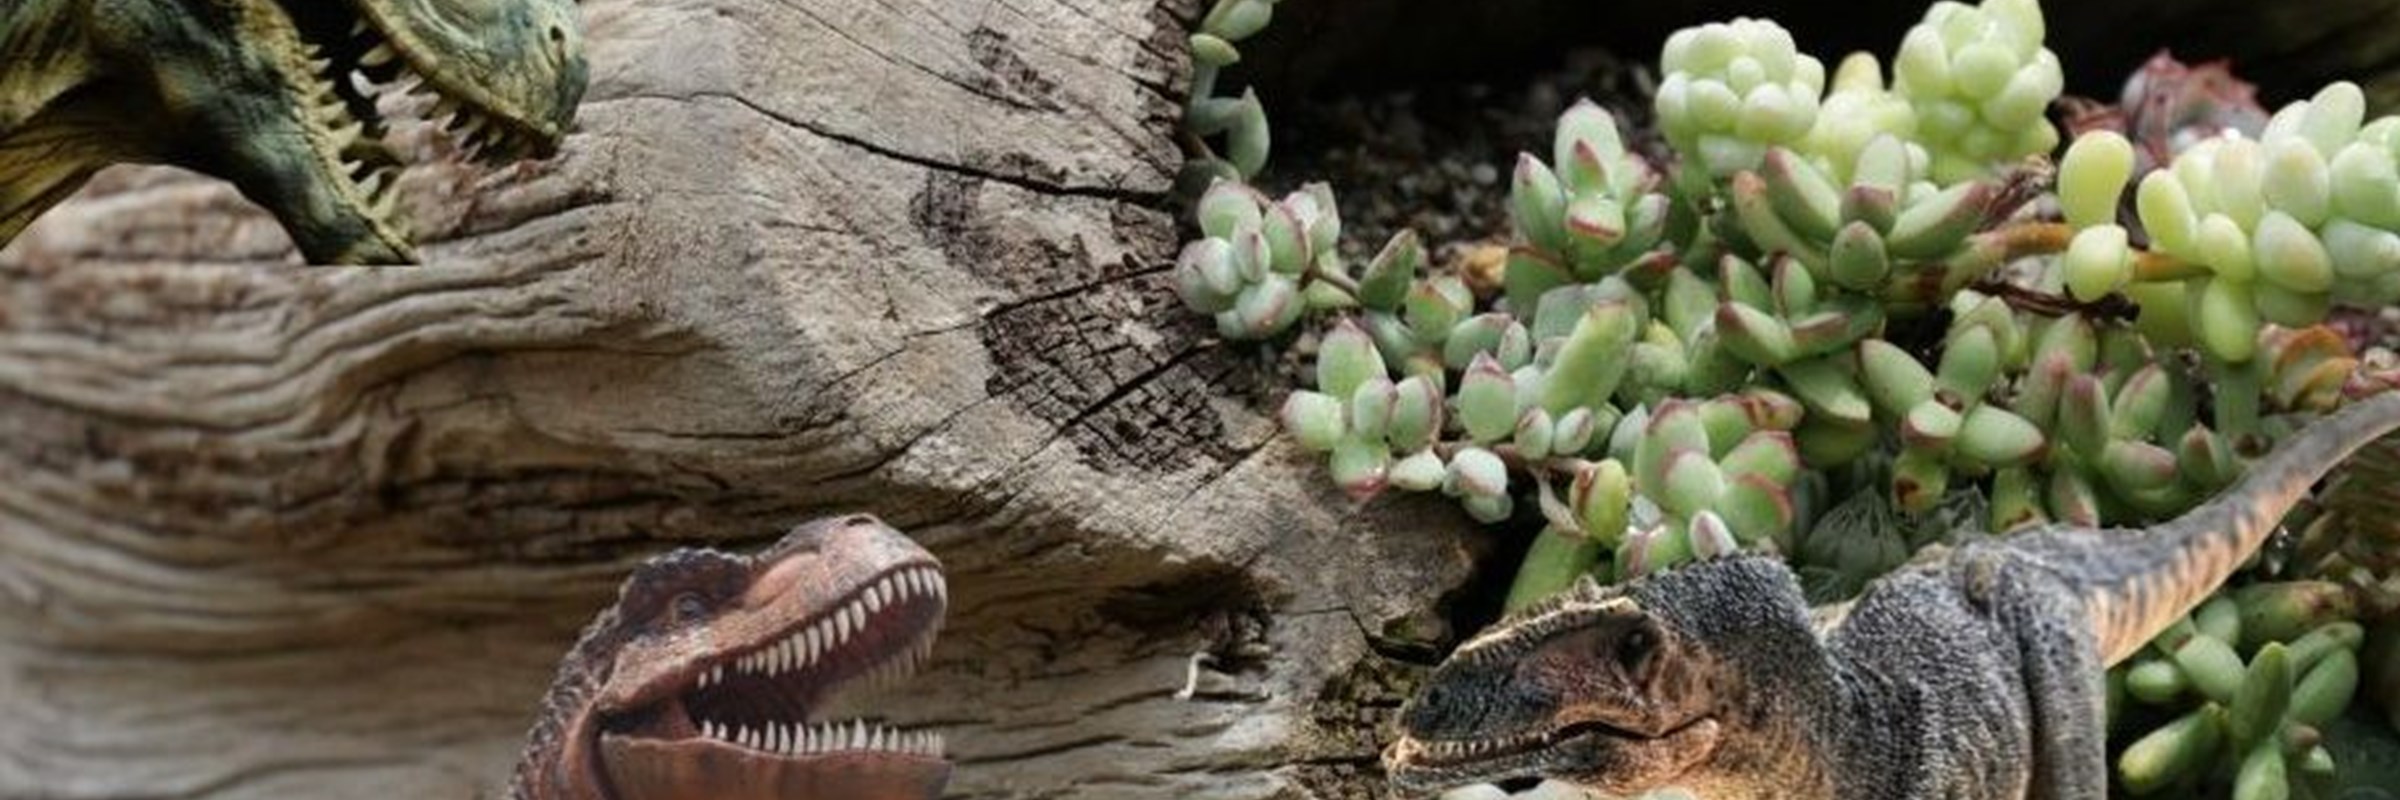 Dinos & Scary Creatures Mini Garden